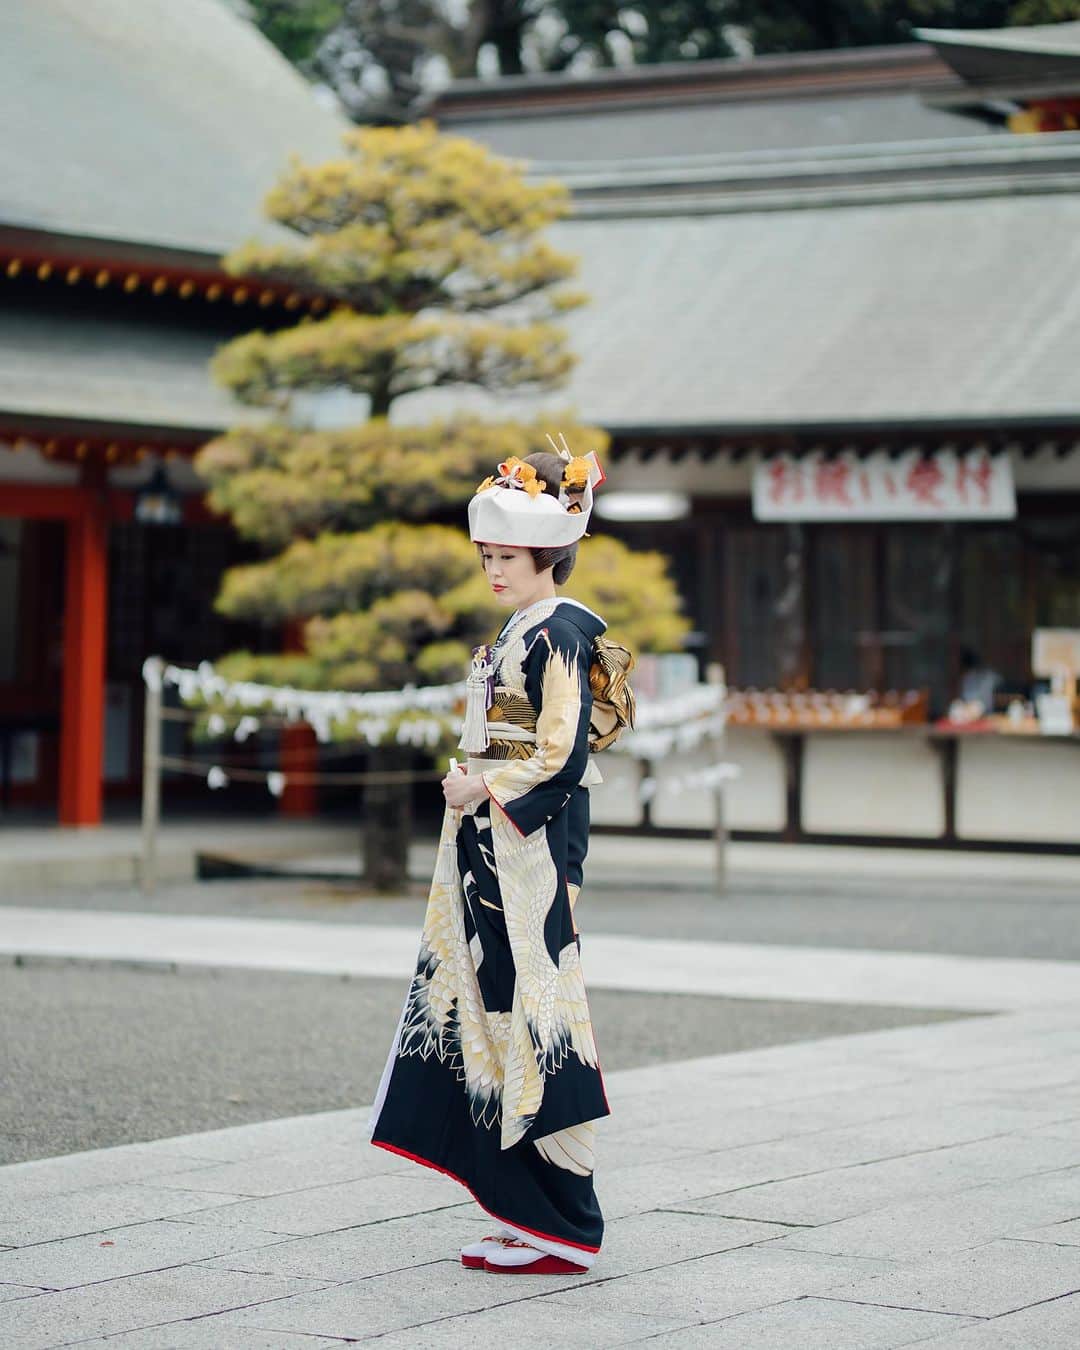 juno_jinjakonのインスタグラム：「長きにわたり伝統を受け継いできた日本の文化の象徴であるきもの。  伝統と美風を継承した神社挙式  日本で生まれ育った私たちにとって ふさわしい結婚式であり家族の絆を受け継いでいく日本伝統文化の姿  その想いを大切に、 JUNOが神社挙式をトータルプロデュースいたします。  〜10月・11月フェアのお知らせ〜  JUNO神社婚プランをご成約いただいた 全ての新郎新婦様へ Dressesが手掛ける "セルフフォトウェディング"プレゼント‼︎  ■期間 2023年10月20日(金)〜2023年11月15日(水)迄 ※ご予約が満席のお日にちもございます🙇‍♀️  ■フェア特典 フェア期間中、JUNO神社婚相談会を ご成約いただいた全ての新郎新婦様へ、 Dressesが手掛けるセルフフォトをプレゼント！  ■ 開催店舗 JUNO天神本店  ■参加特典：セルフフォトウェディング詳細 ・Dressesが厳選したウェディングドレス&タキシードを着用して撮影が可能！（私服でも可） ・簡単なヘアセット、アクセサリーはご準備してあるので手ぶらでもOK！ ・お渡しのデータはその場で5カットプレゼント！  さらに、お二人の撮影したお写真をDresses公式Instagramに掲載させていただける方には 撮影の全データをプレゼントさせていただきます。  ※JUNO神社婚プランをご成約後 後日Dressesブライダルカウンター博多店にて 撮影のご案内をさせていただきます。  お電話でのお問合せ、ご予約は⇩ ☏ 092-262-1107 (定休日:火曜日・水曜日)  #神社挙式#白無垢#色打掛 #プレ花嫁 #家族婚#少人数結婚式 #福岡花嫁#神社婚 #太宰府天満宮#住吉神社#護国神社 #警固神社#香椎宮#宗像大社#竈門神社 #櫛田神社#宮地嶽神社」